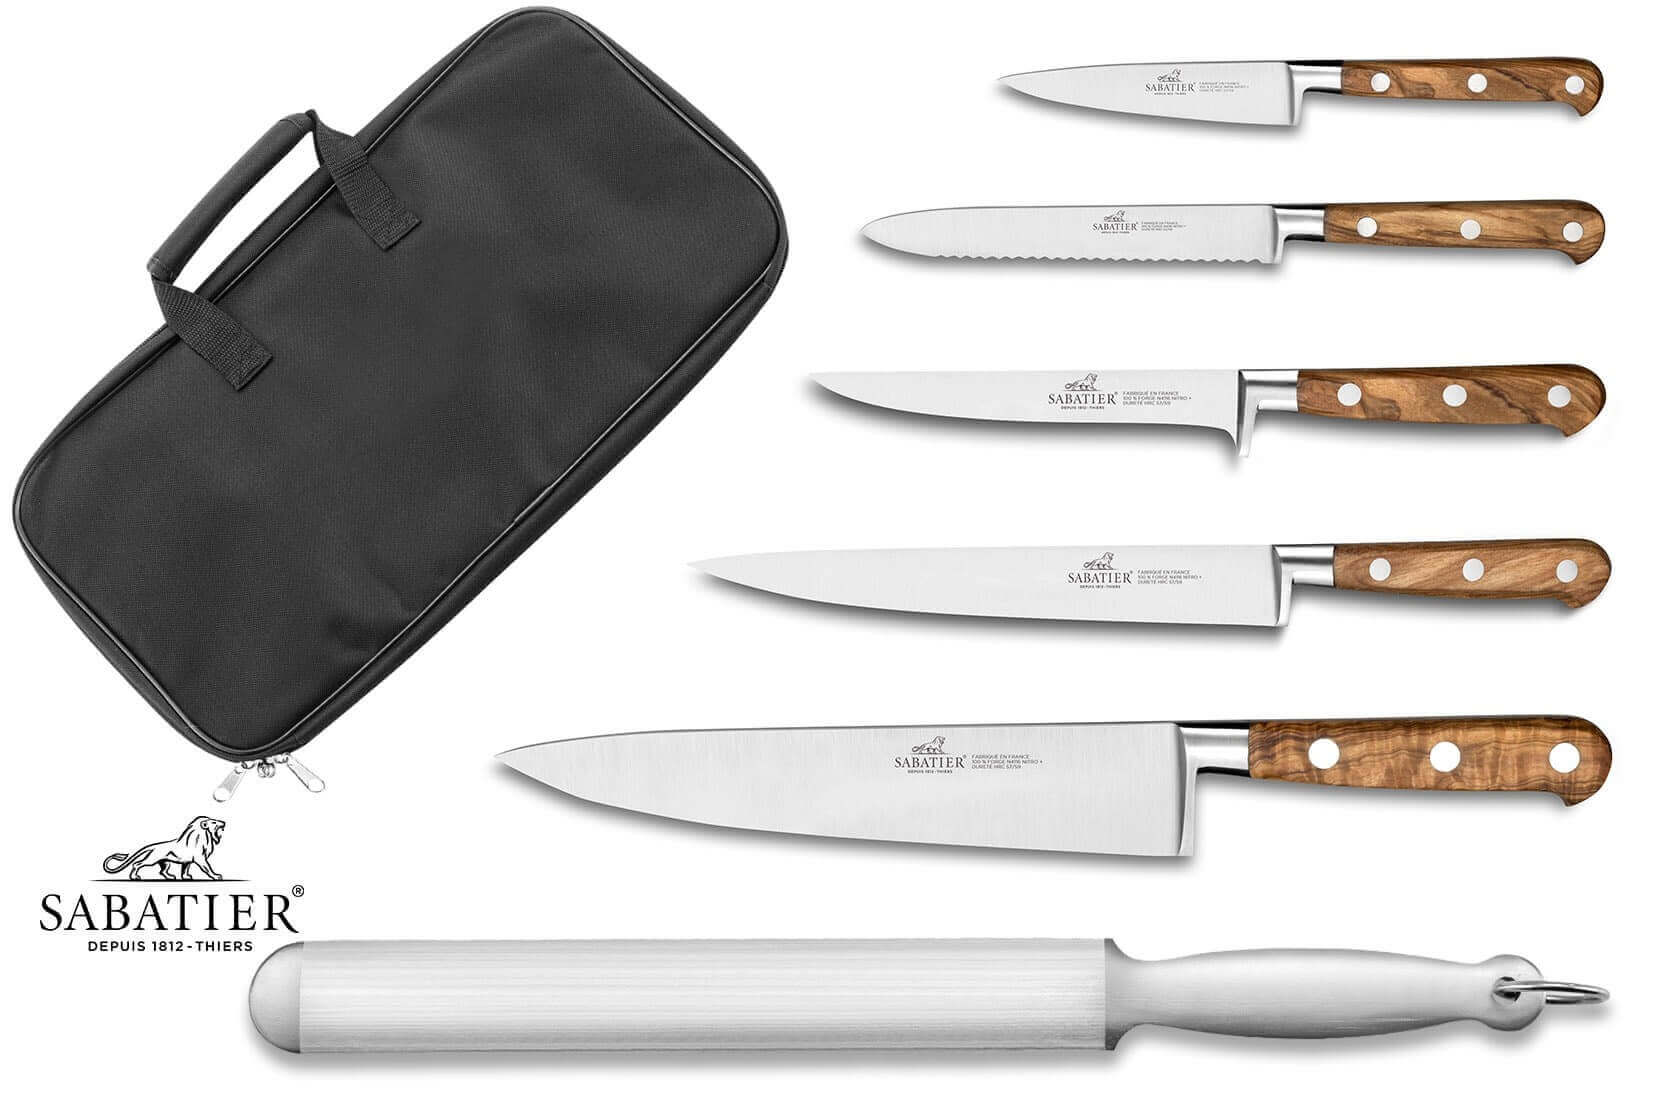 Bloc 5 couteaux Japan Chef Chroma aiguiseur et pince inclus